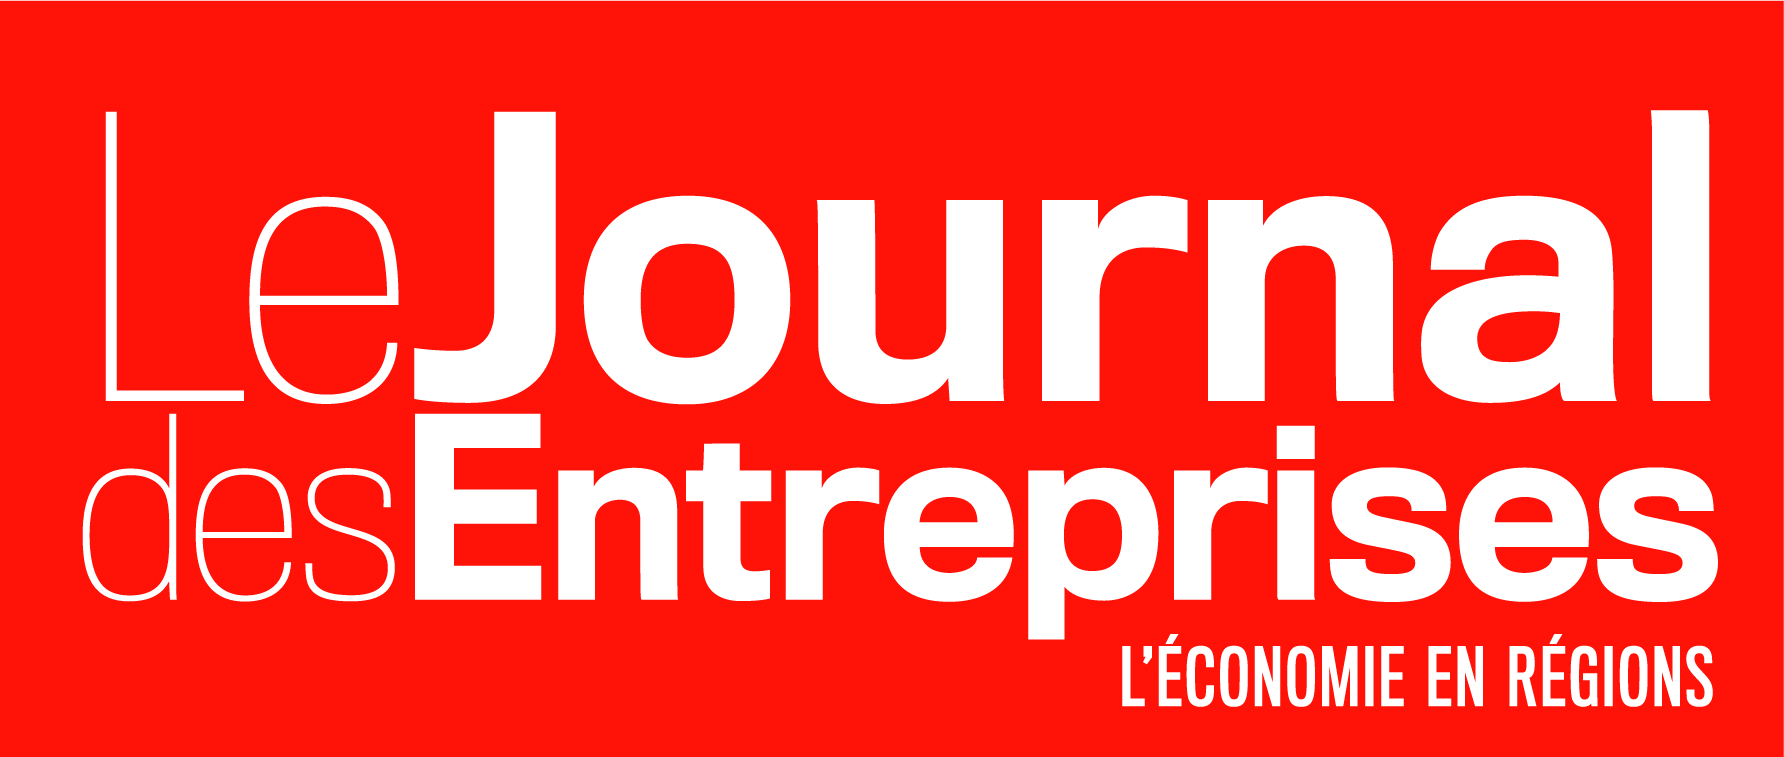 journal-entreprise-logo